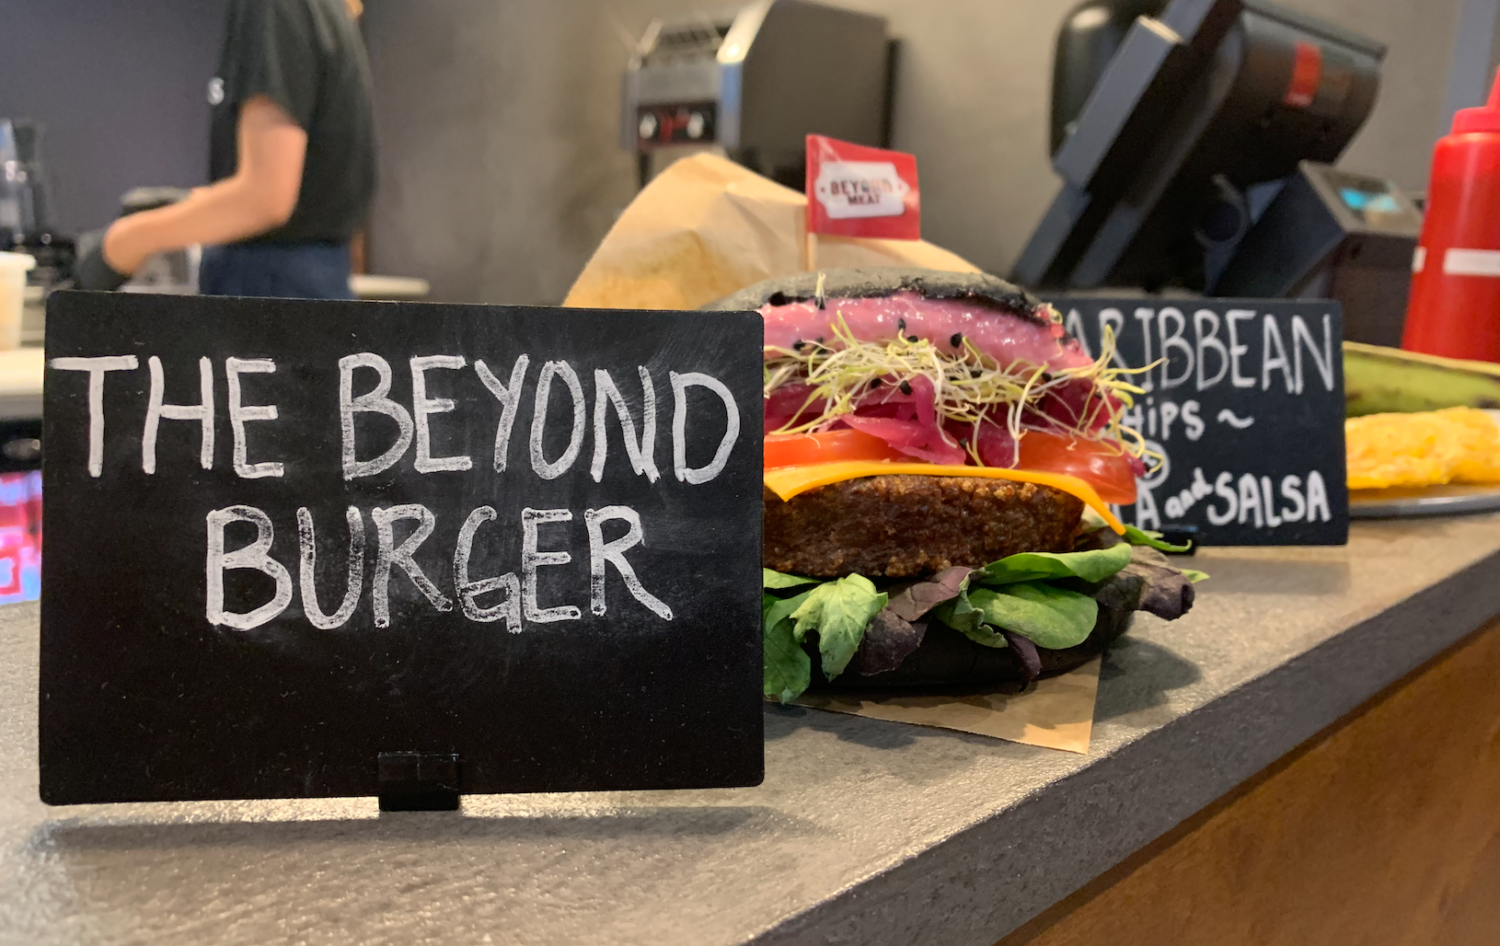 Beyond Burger